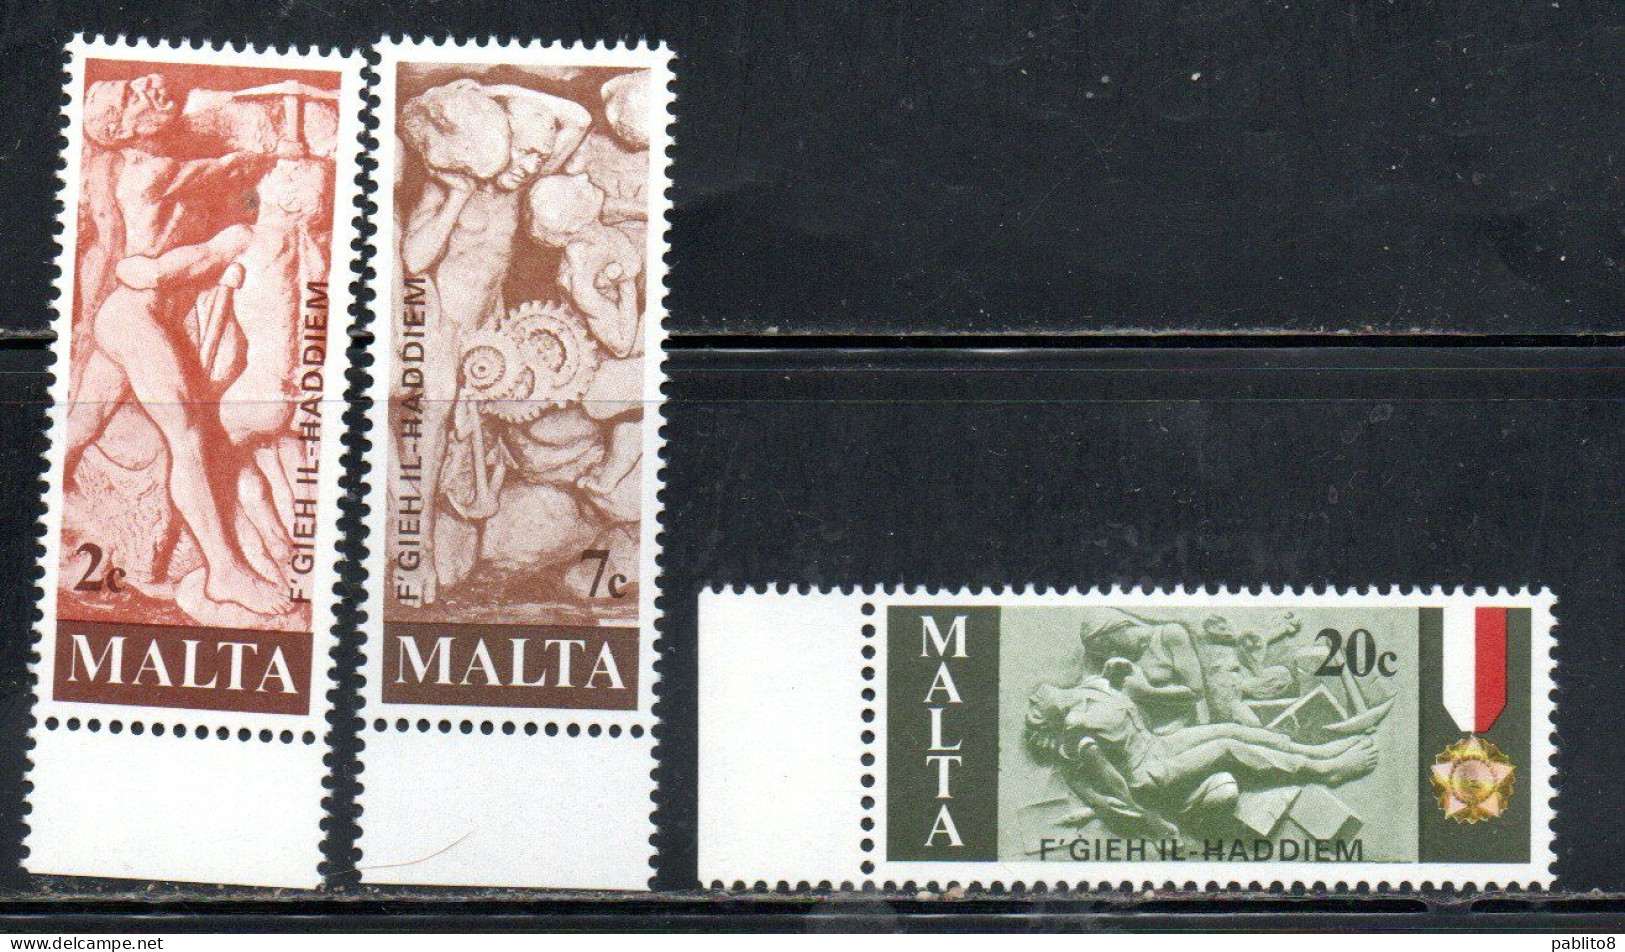 MALTA 1977 TRIBUTE TO MALTESE WORKERS SCULPTURES SCULTURE DEI LAVORATORI COMPLETE SET SERIE COMPLETA MNH - Malte